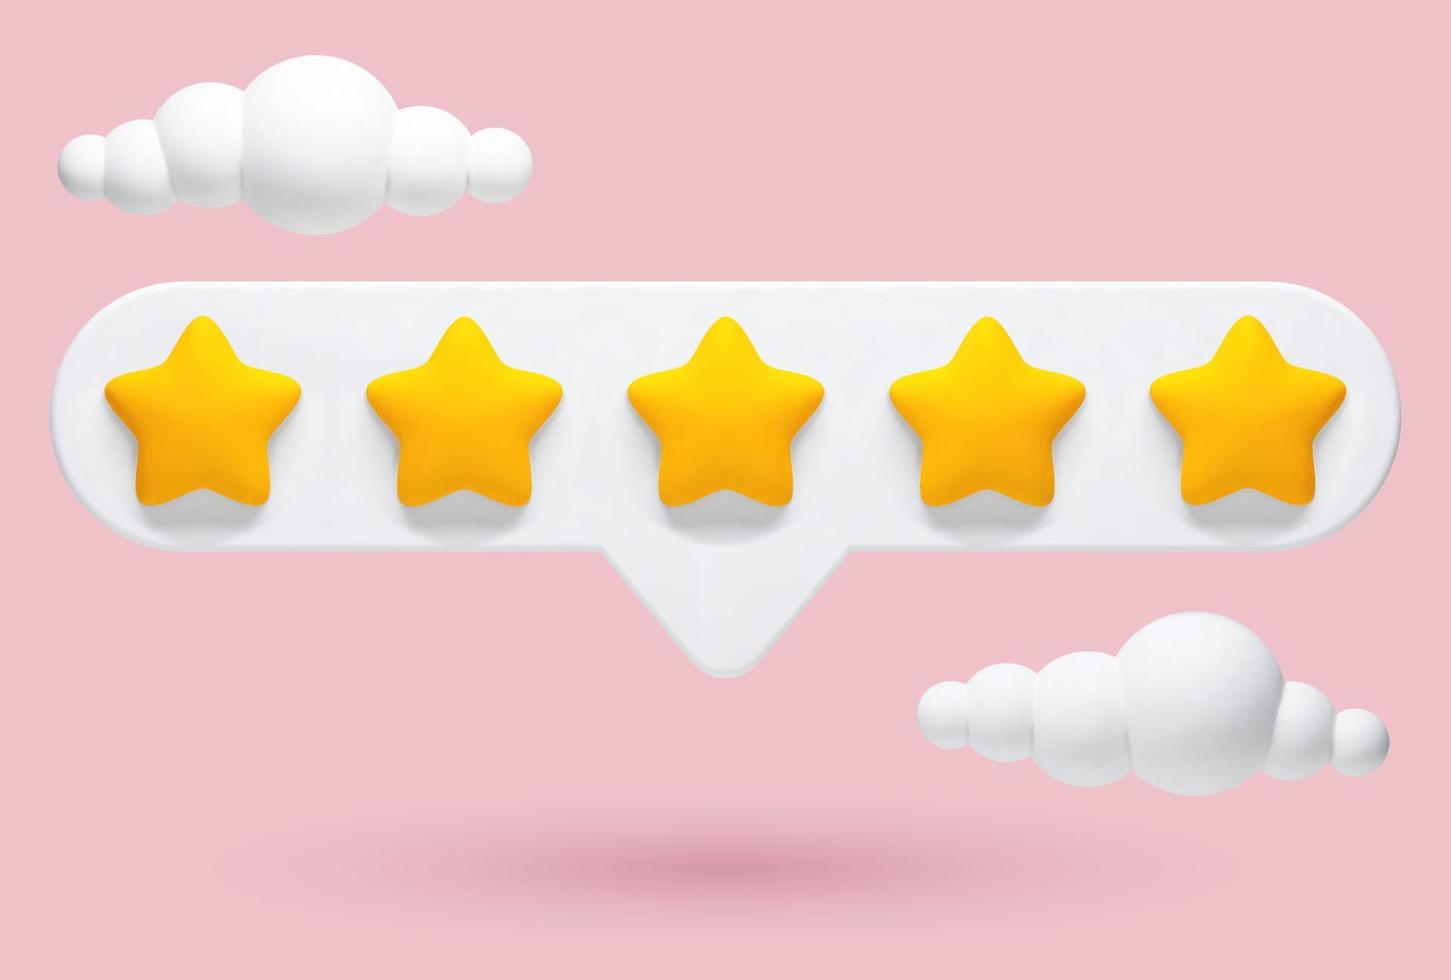 vector 3d ilustración realista de comentarios de 5 estrellas, evaluación de un producto o servicio en un fondo rosa con nubes